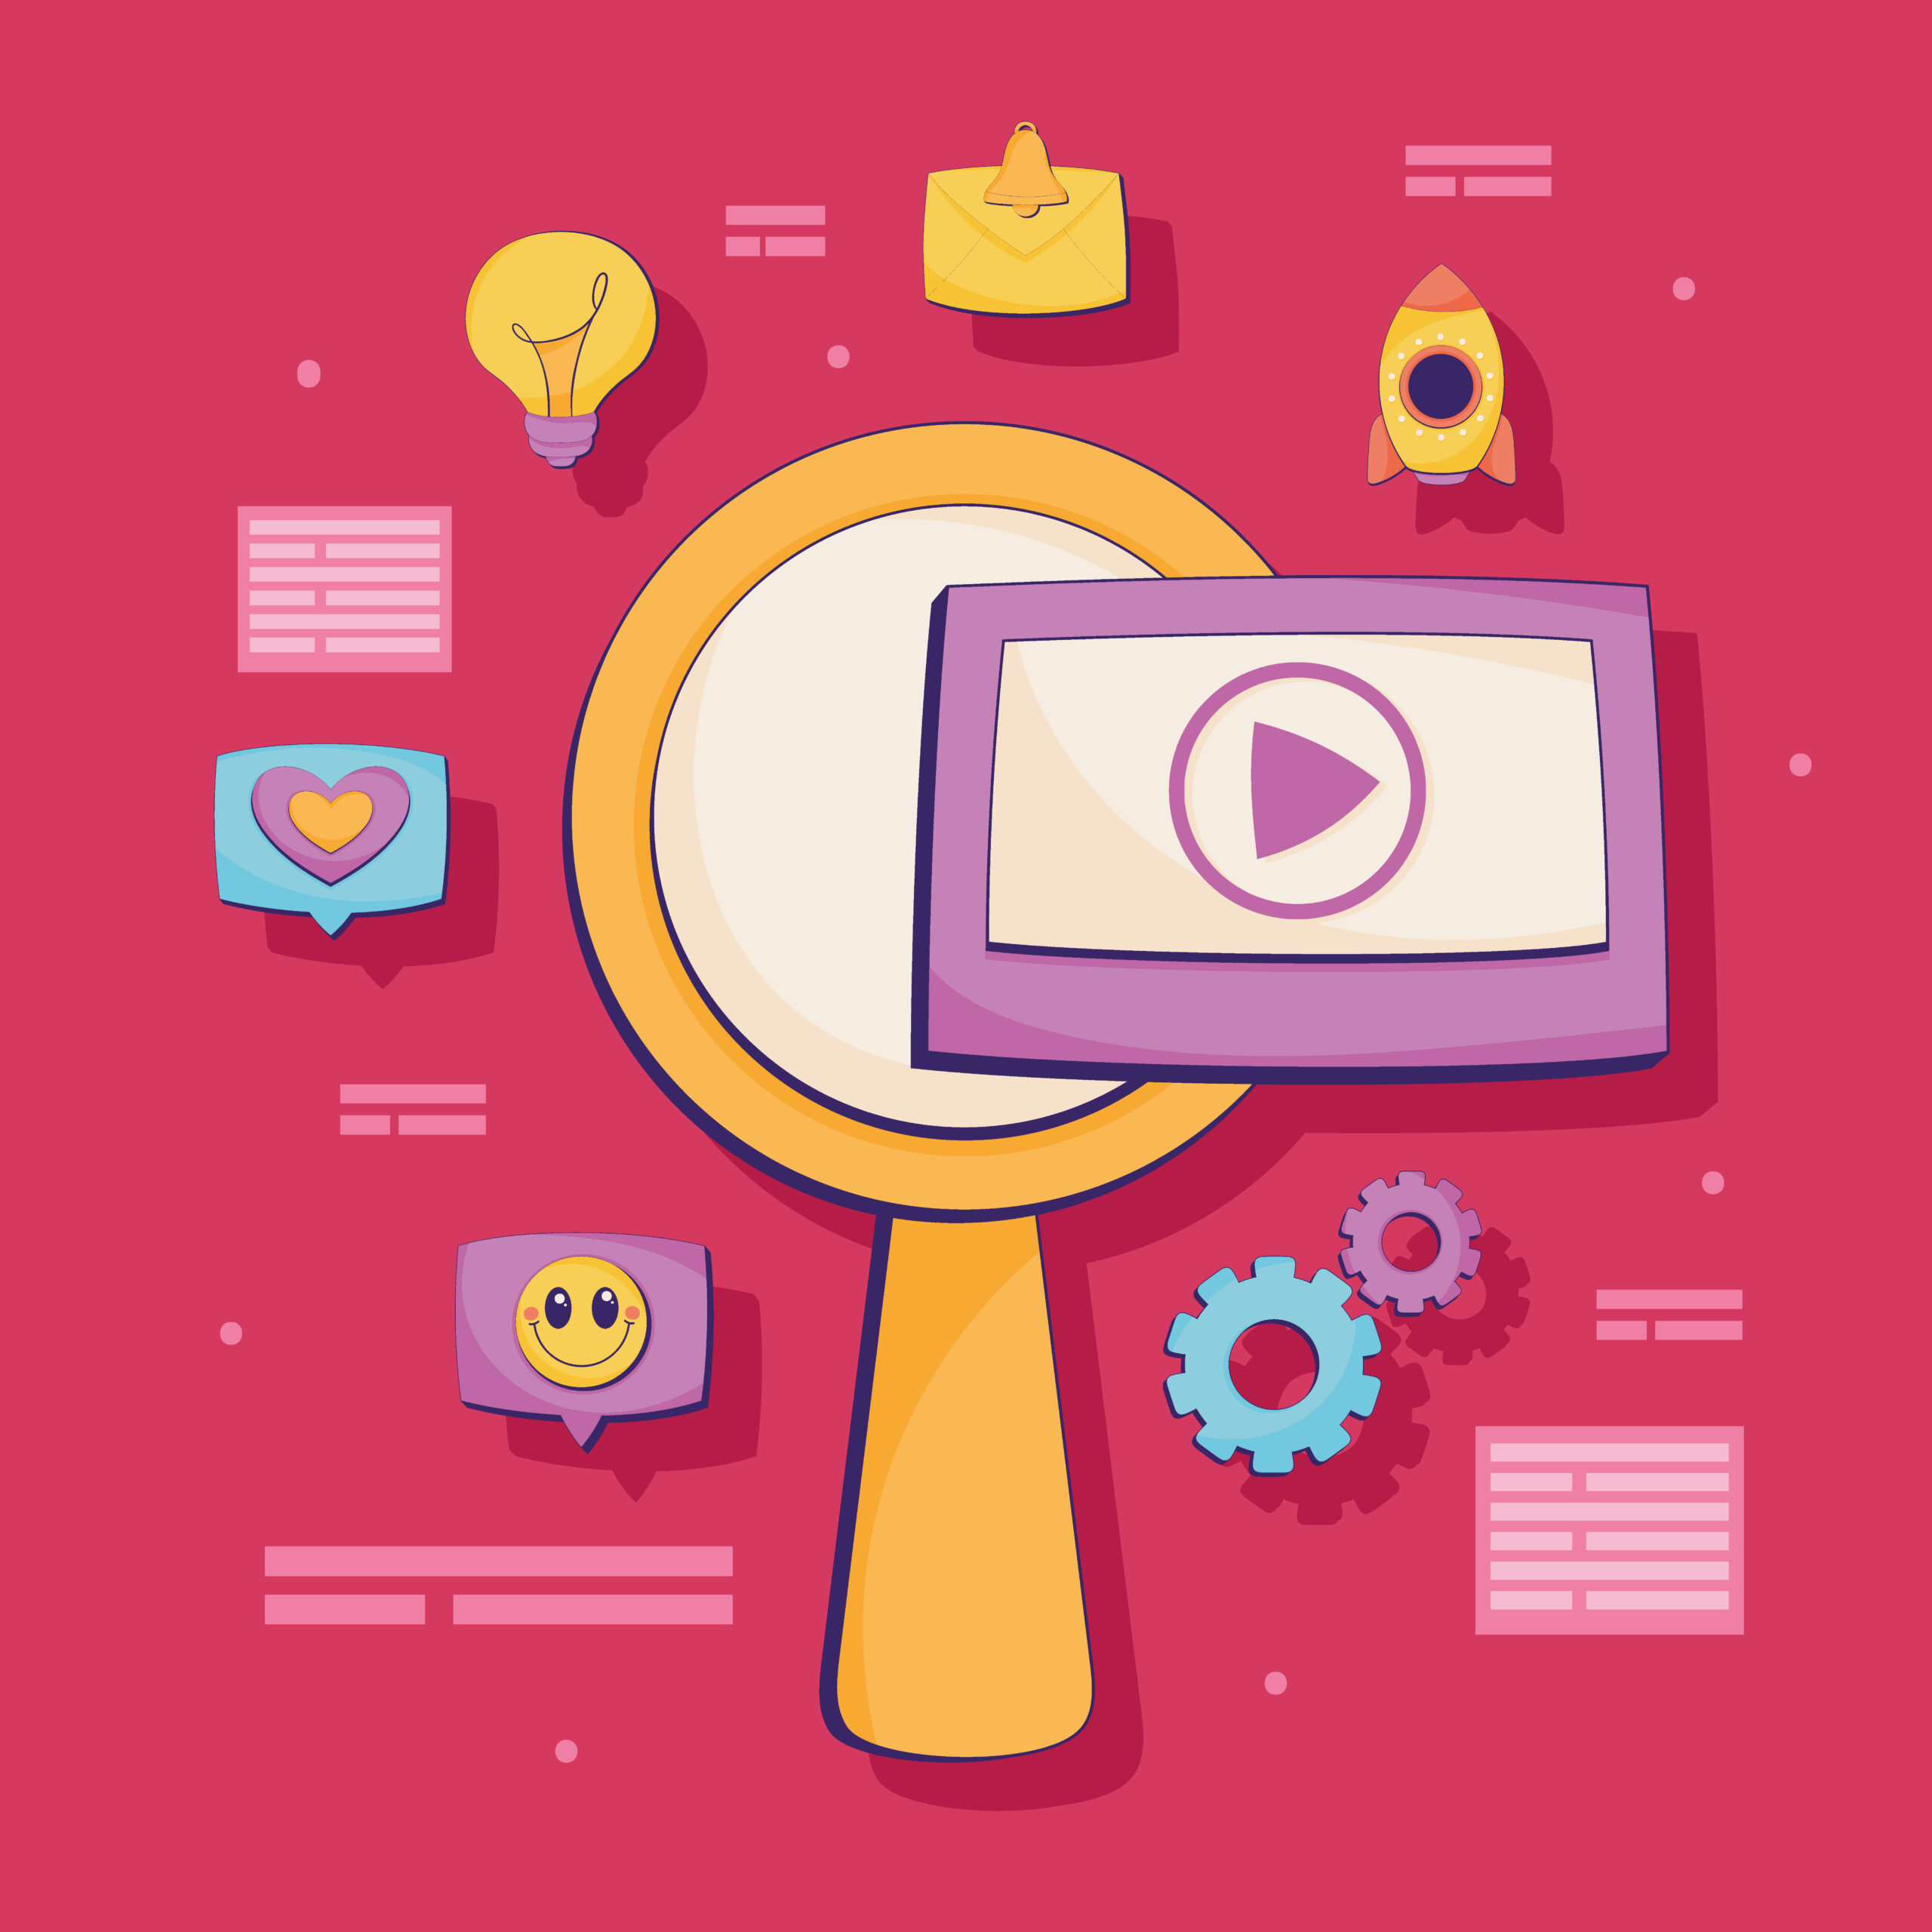 SEO para Vídeos: Estratégias para otimizar vídeos e aproveitar o tráfego do YouTube e outras plataformas de vídeo.